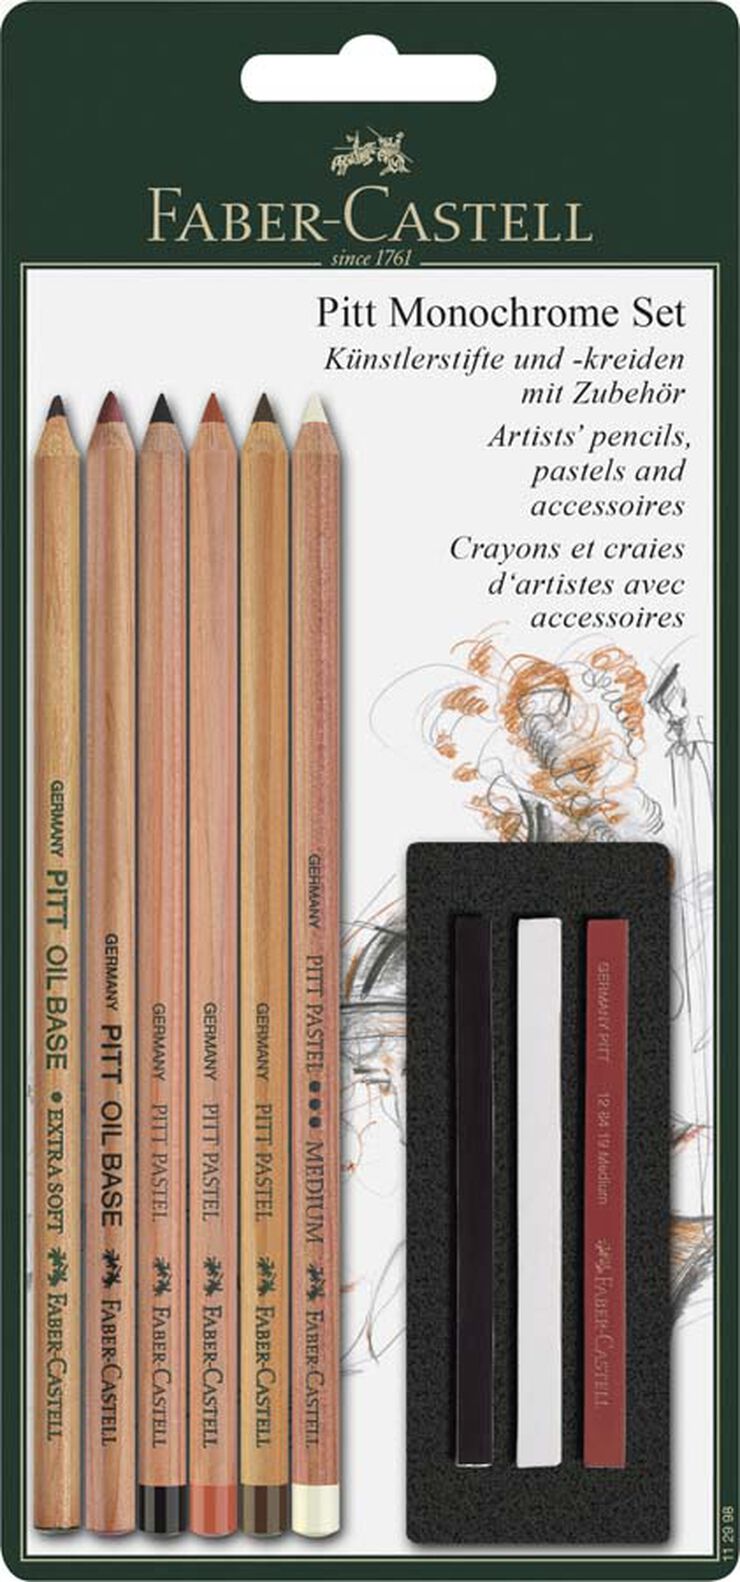 Kit de Dibujo para niños 258 Piezas, incluye Ceras, pinturas al